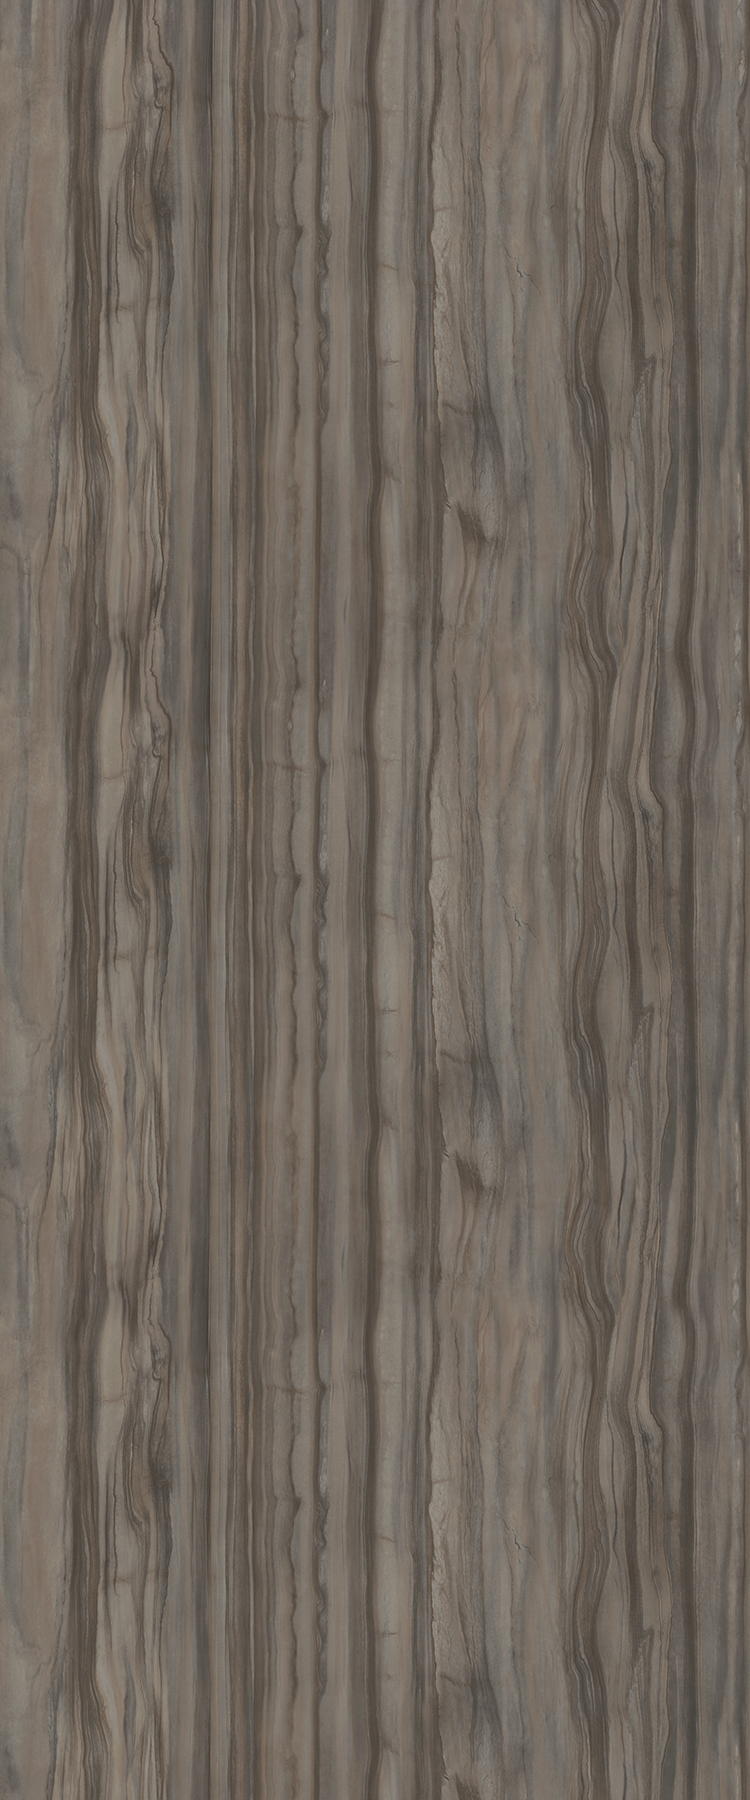 3703 Woodland Marble - 180fx® Laminate